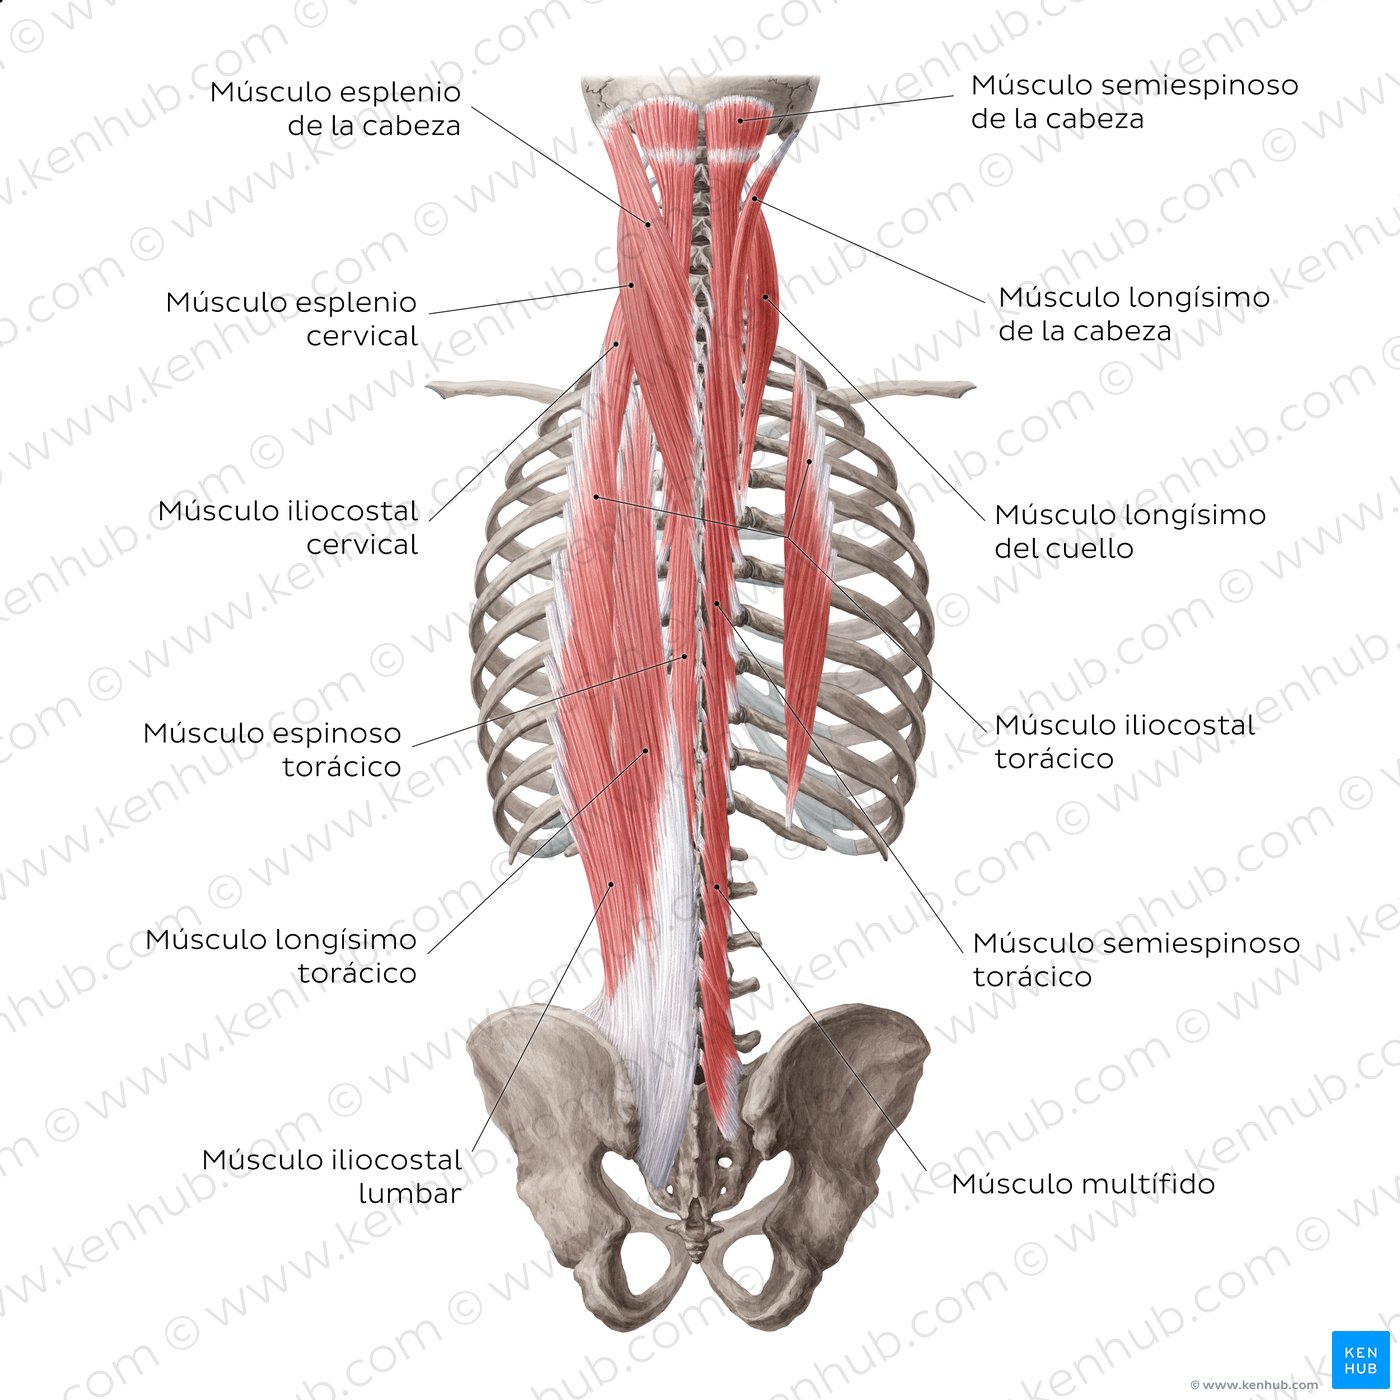 Músculos intrínsecos de la espalda: Capa superficial y intermedia